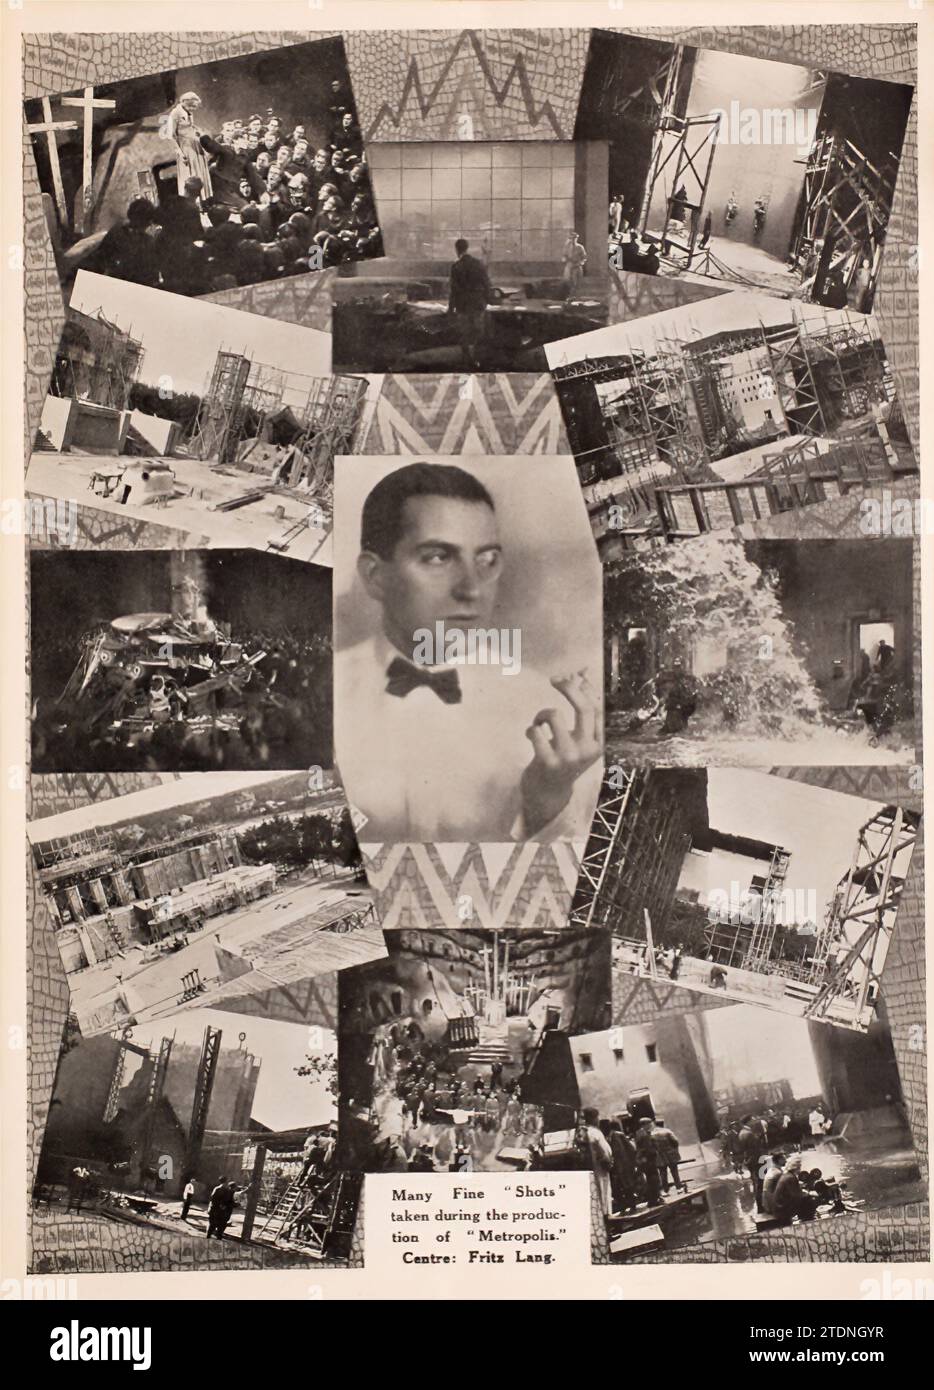 Fritz Lang et scènes du film Metropolis Metropolis est un 1927 film muet de science-fiction allemand réalisé par Fritz Lang et écrit par Thea von Harbou en collaboration avec Lang du roman de von Harbou de 1925 du même nom (qui a été écrit intentionnellement comme un traitement). Il met en vedette Gustav Fröhlich, Alfred Abel, Rudolf Klein-Rogge et Brigitte Helm. Erich Pommer l'a produit dans les studios Babelsberg pour Universum film A.G. (UFA). Le film muet est considéré comme un film pionnier de science-fiction, étant parmi les premiers longs métrages de ce genre. Le tournage a eu lieu o Banque D'Images